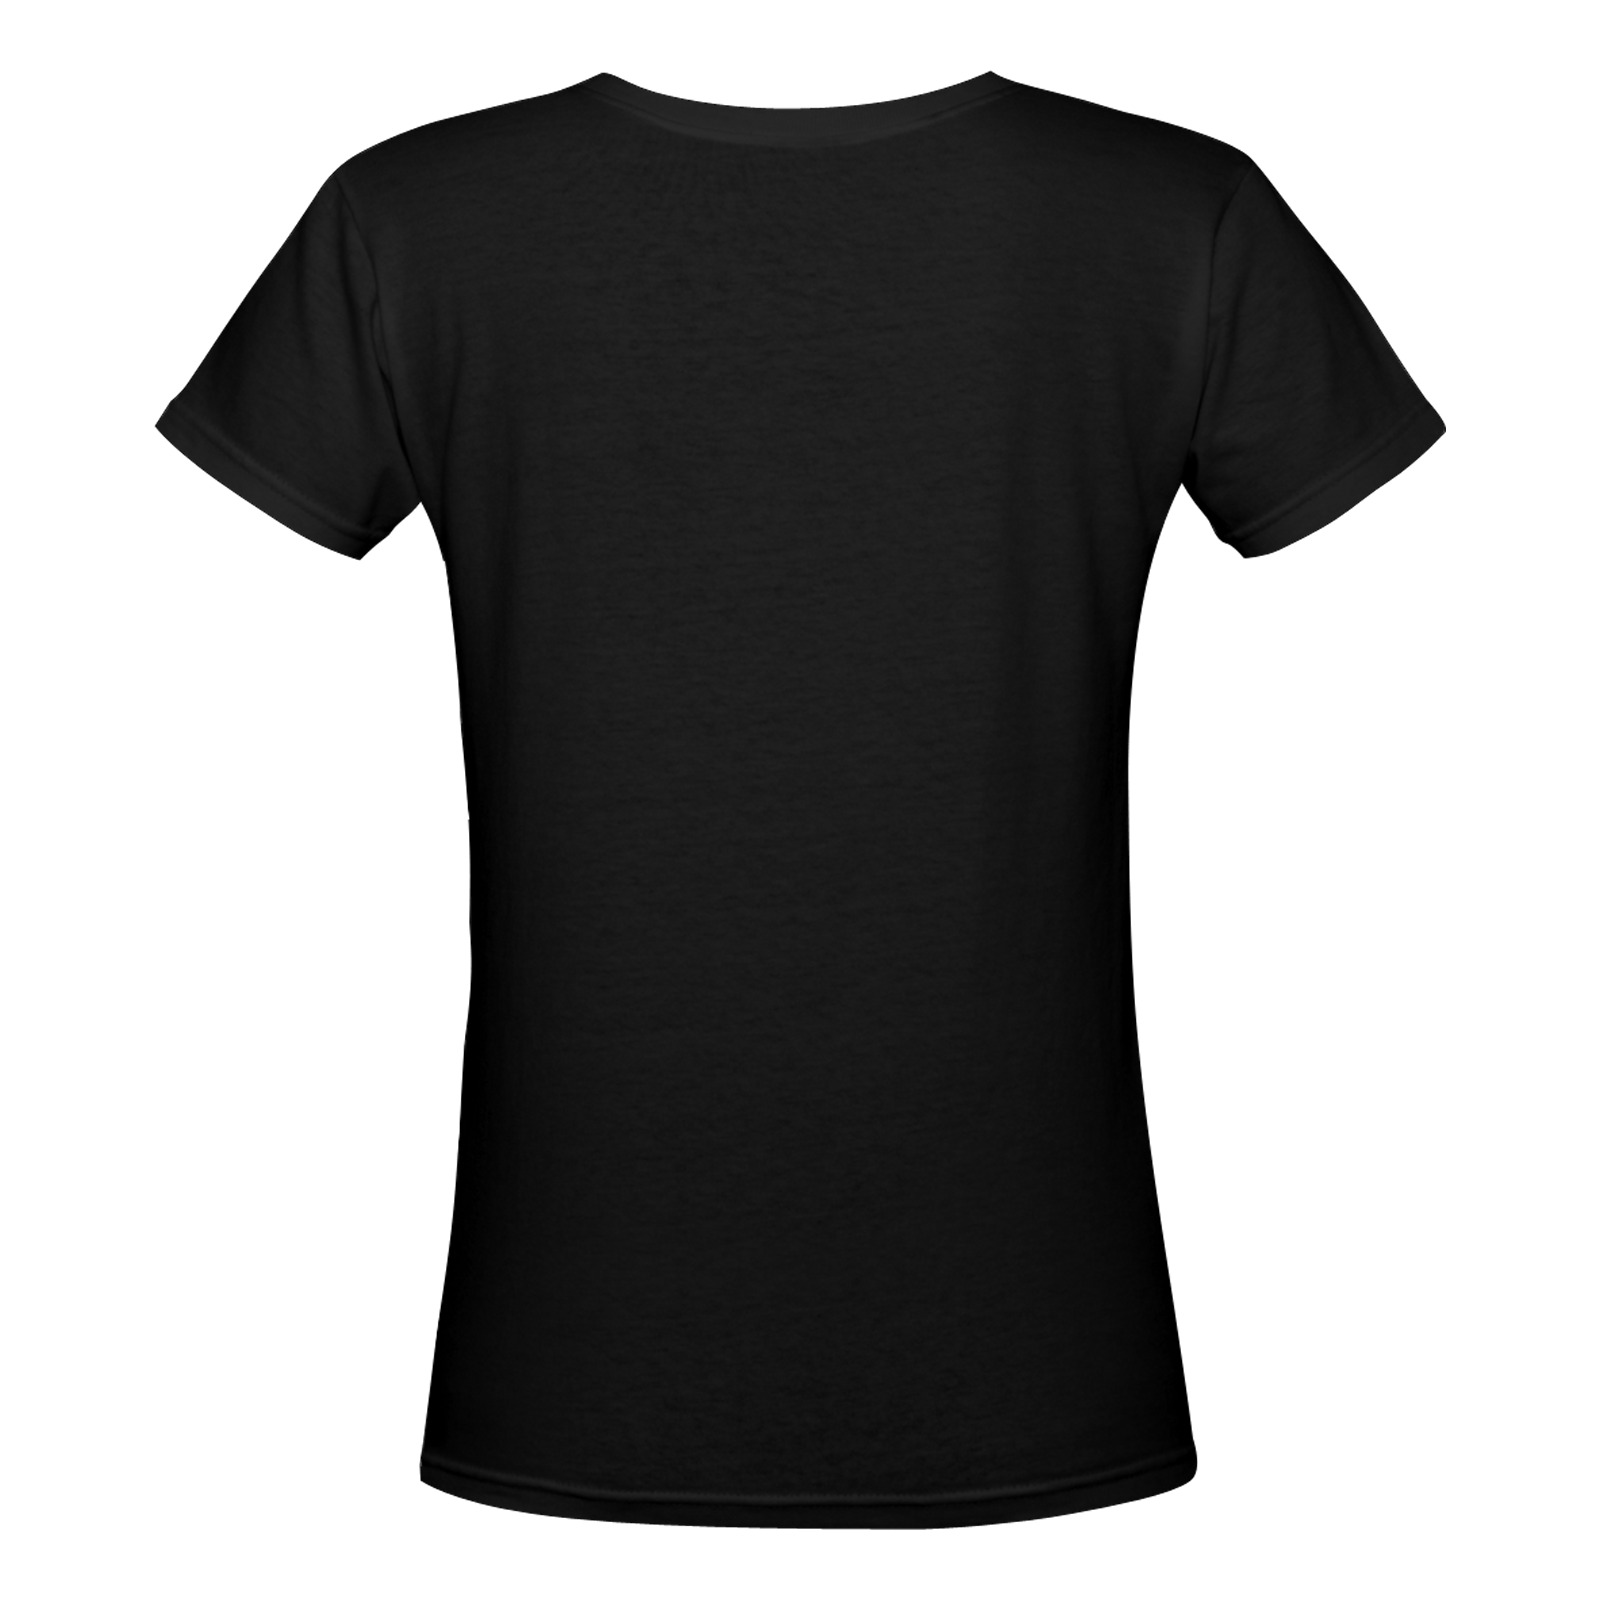 women_s_deep_v_neck_t_shirt_model_t19-147_terri-ann.shanice.morrison_tsm Women's Deep V-neck T-shirt (Model T19)